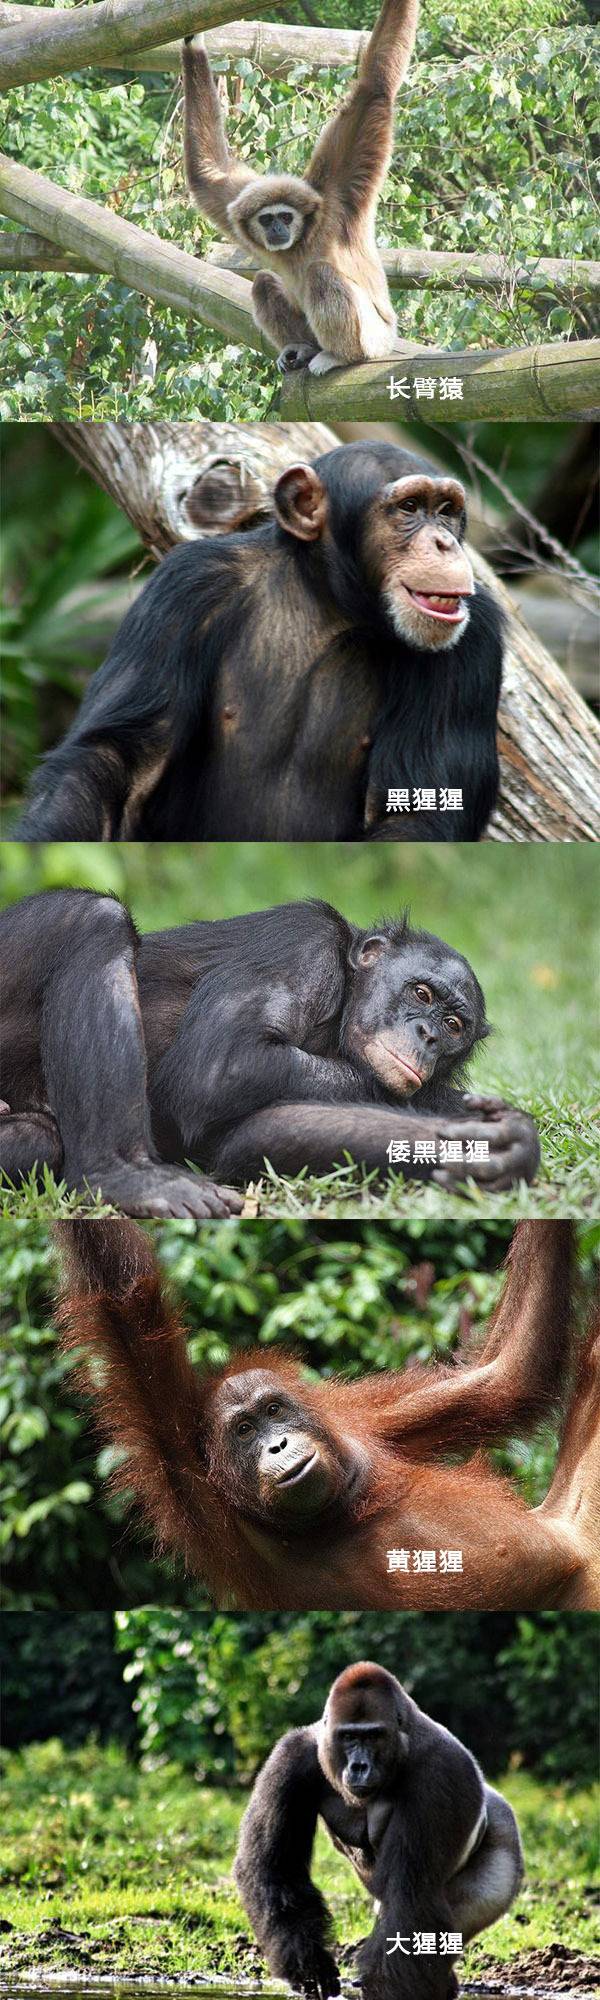 猴子和猿的区别是什么 如何区分猴子和猿